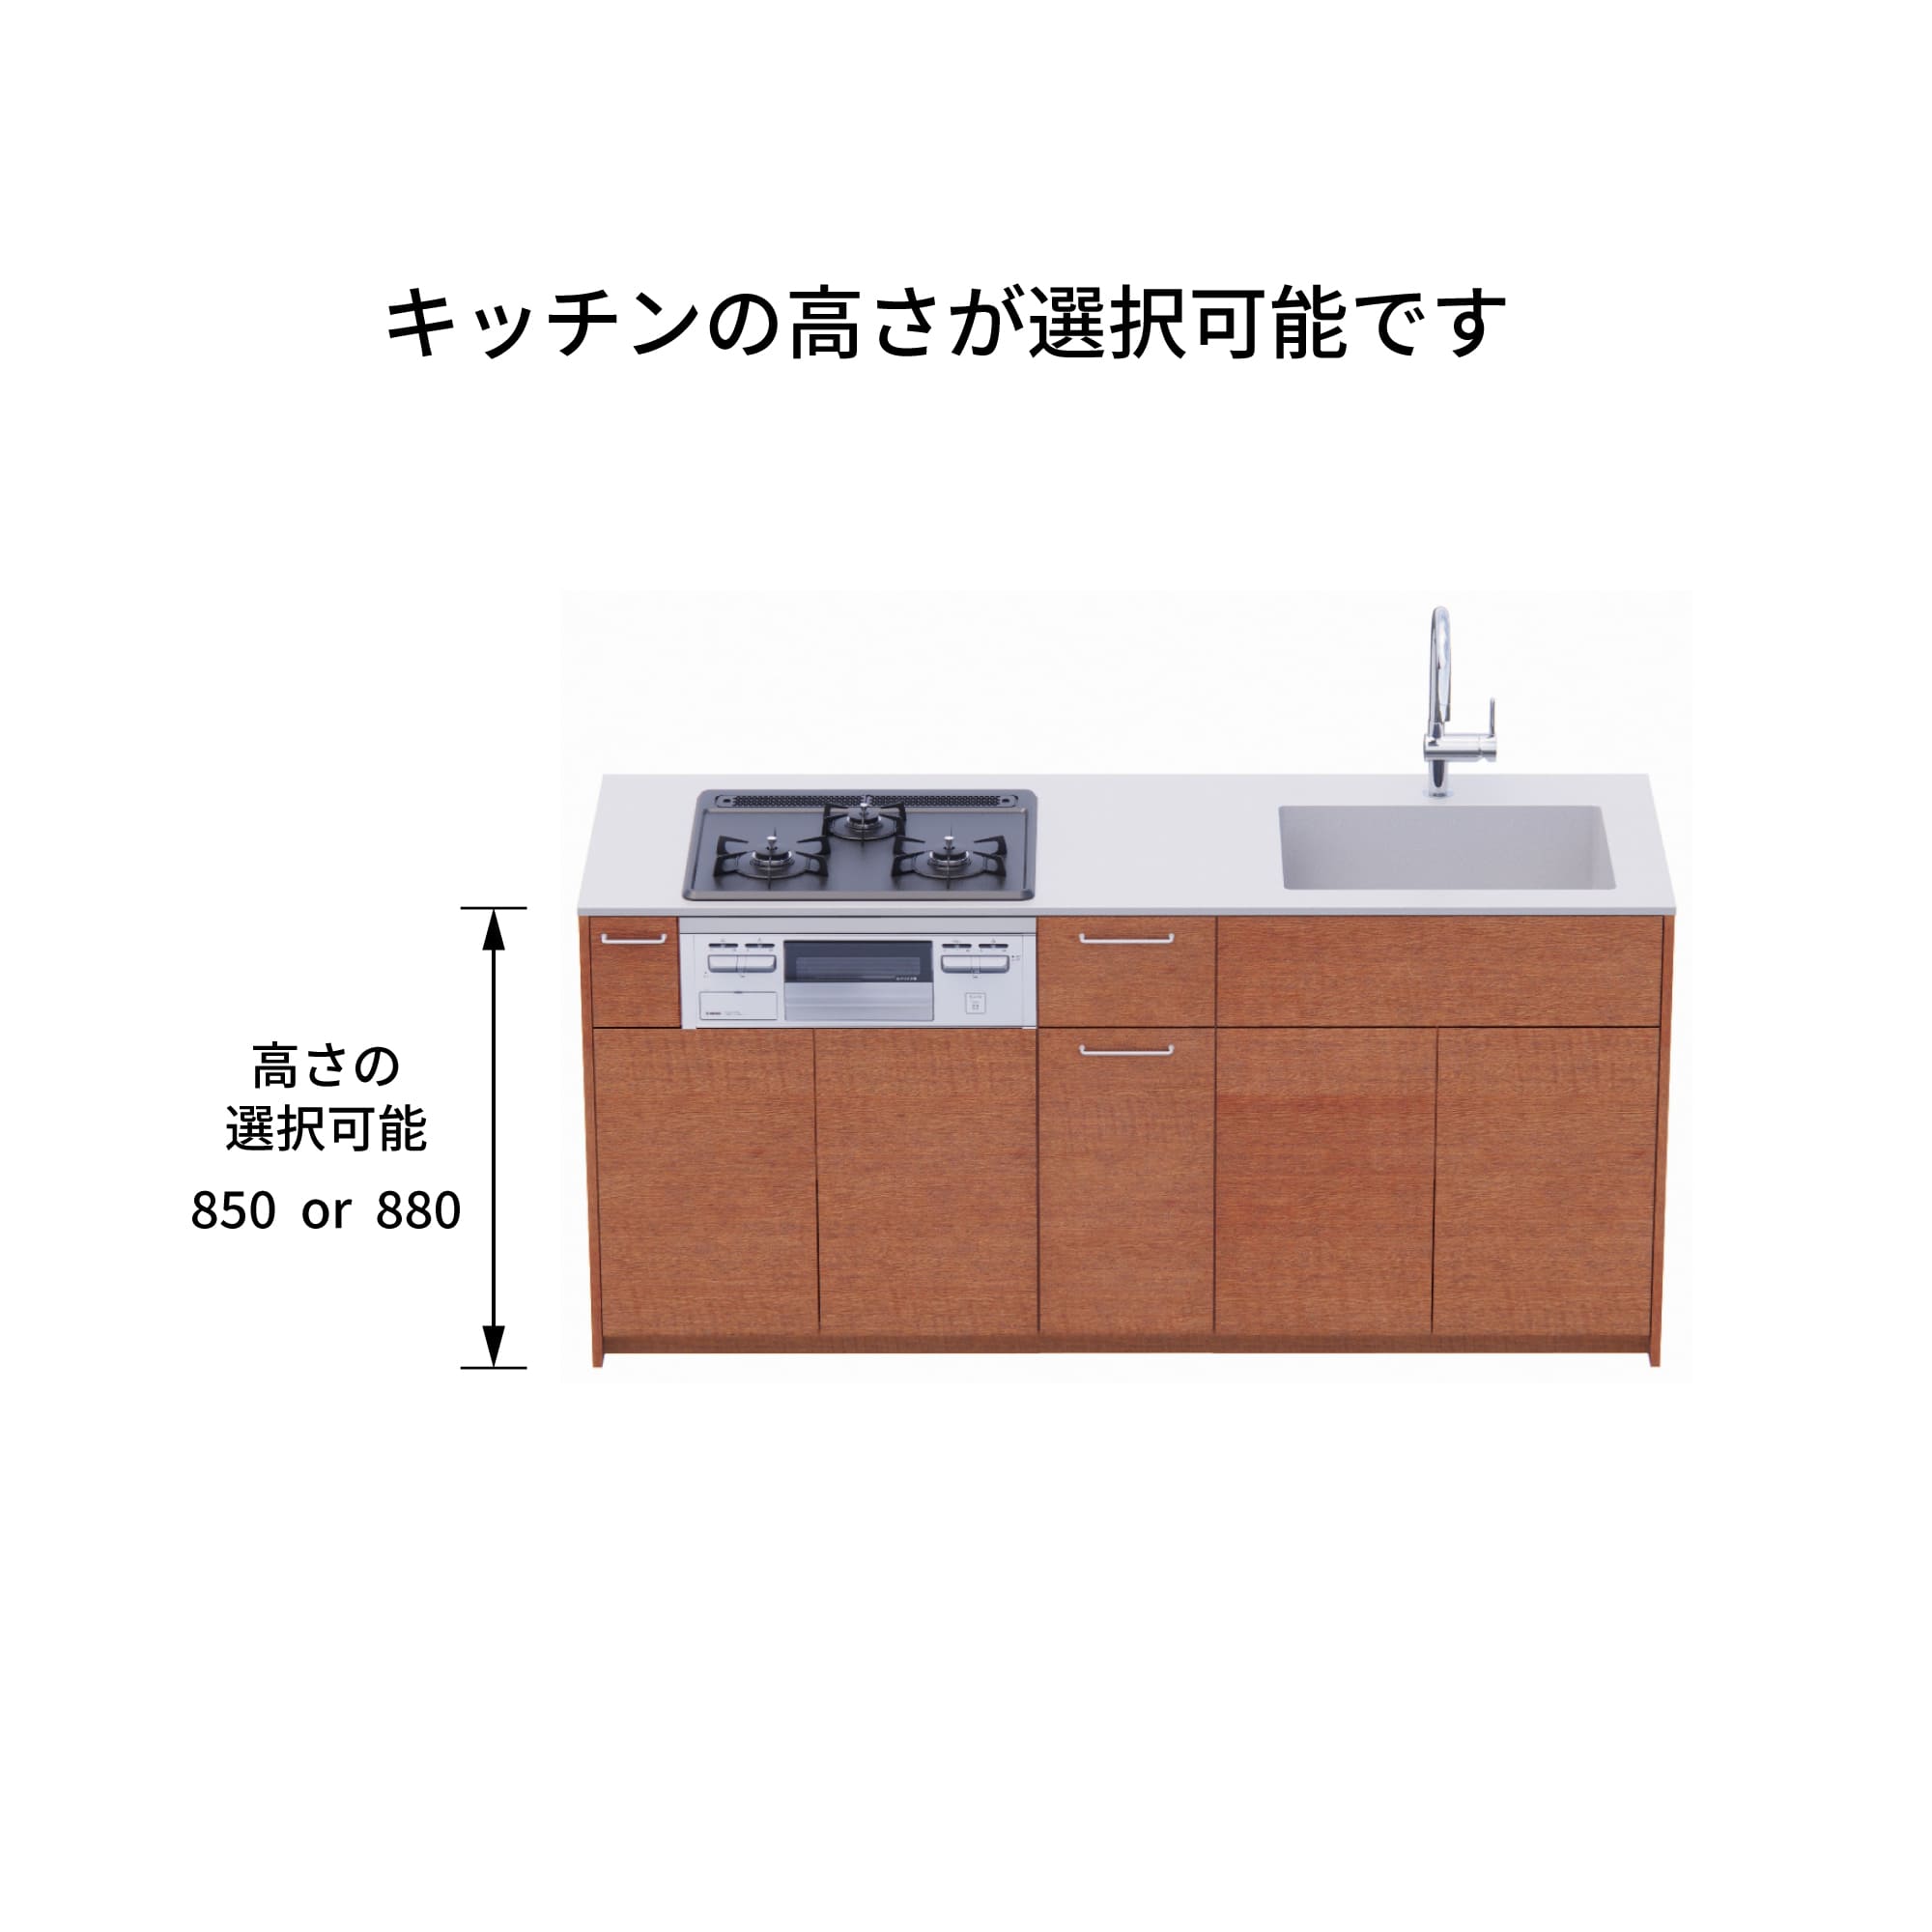 木製システムキッチン 壁付け型 W1990・コンロあり / オーブンなし / 食洗機あり KB-KC022-15-G183 キッチン高さを選択できます